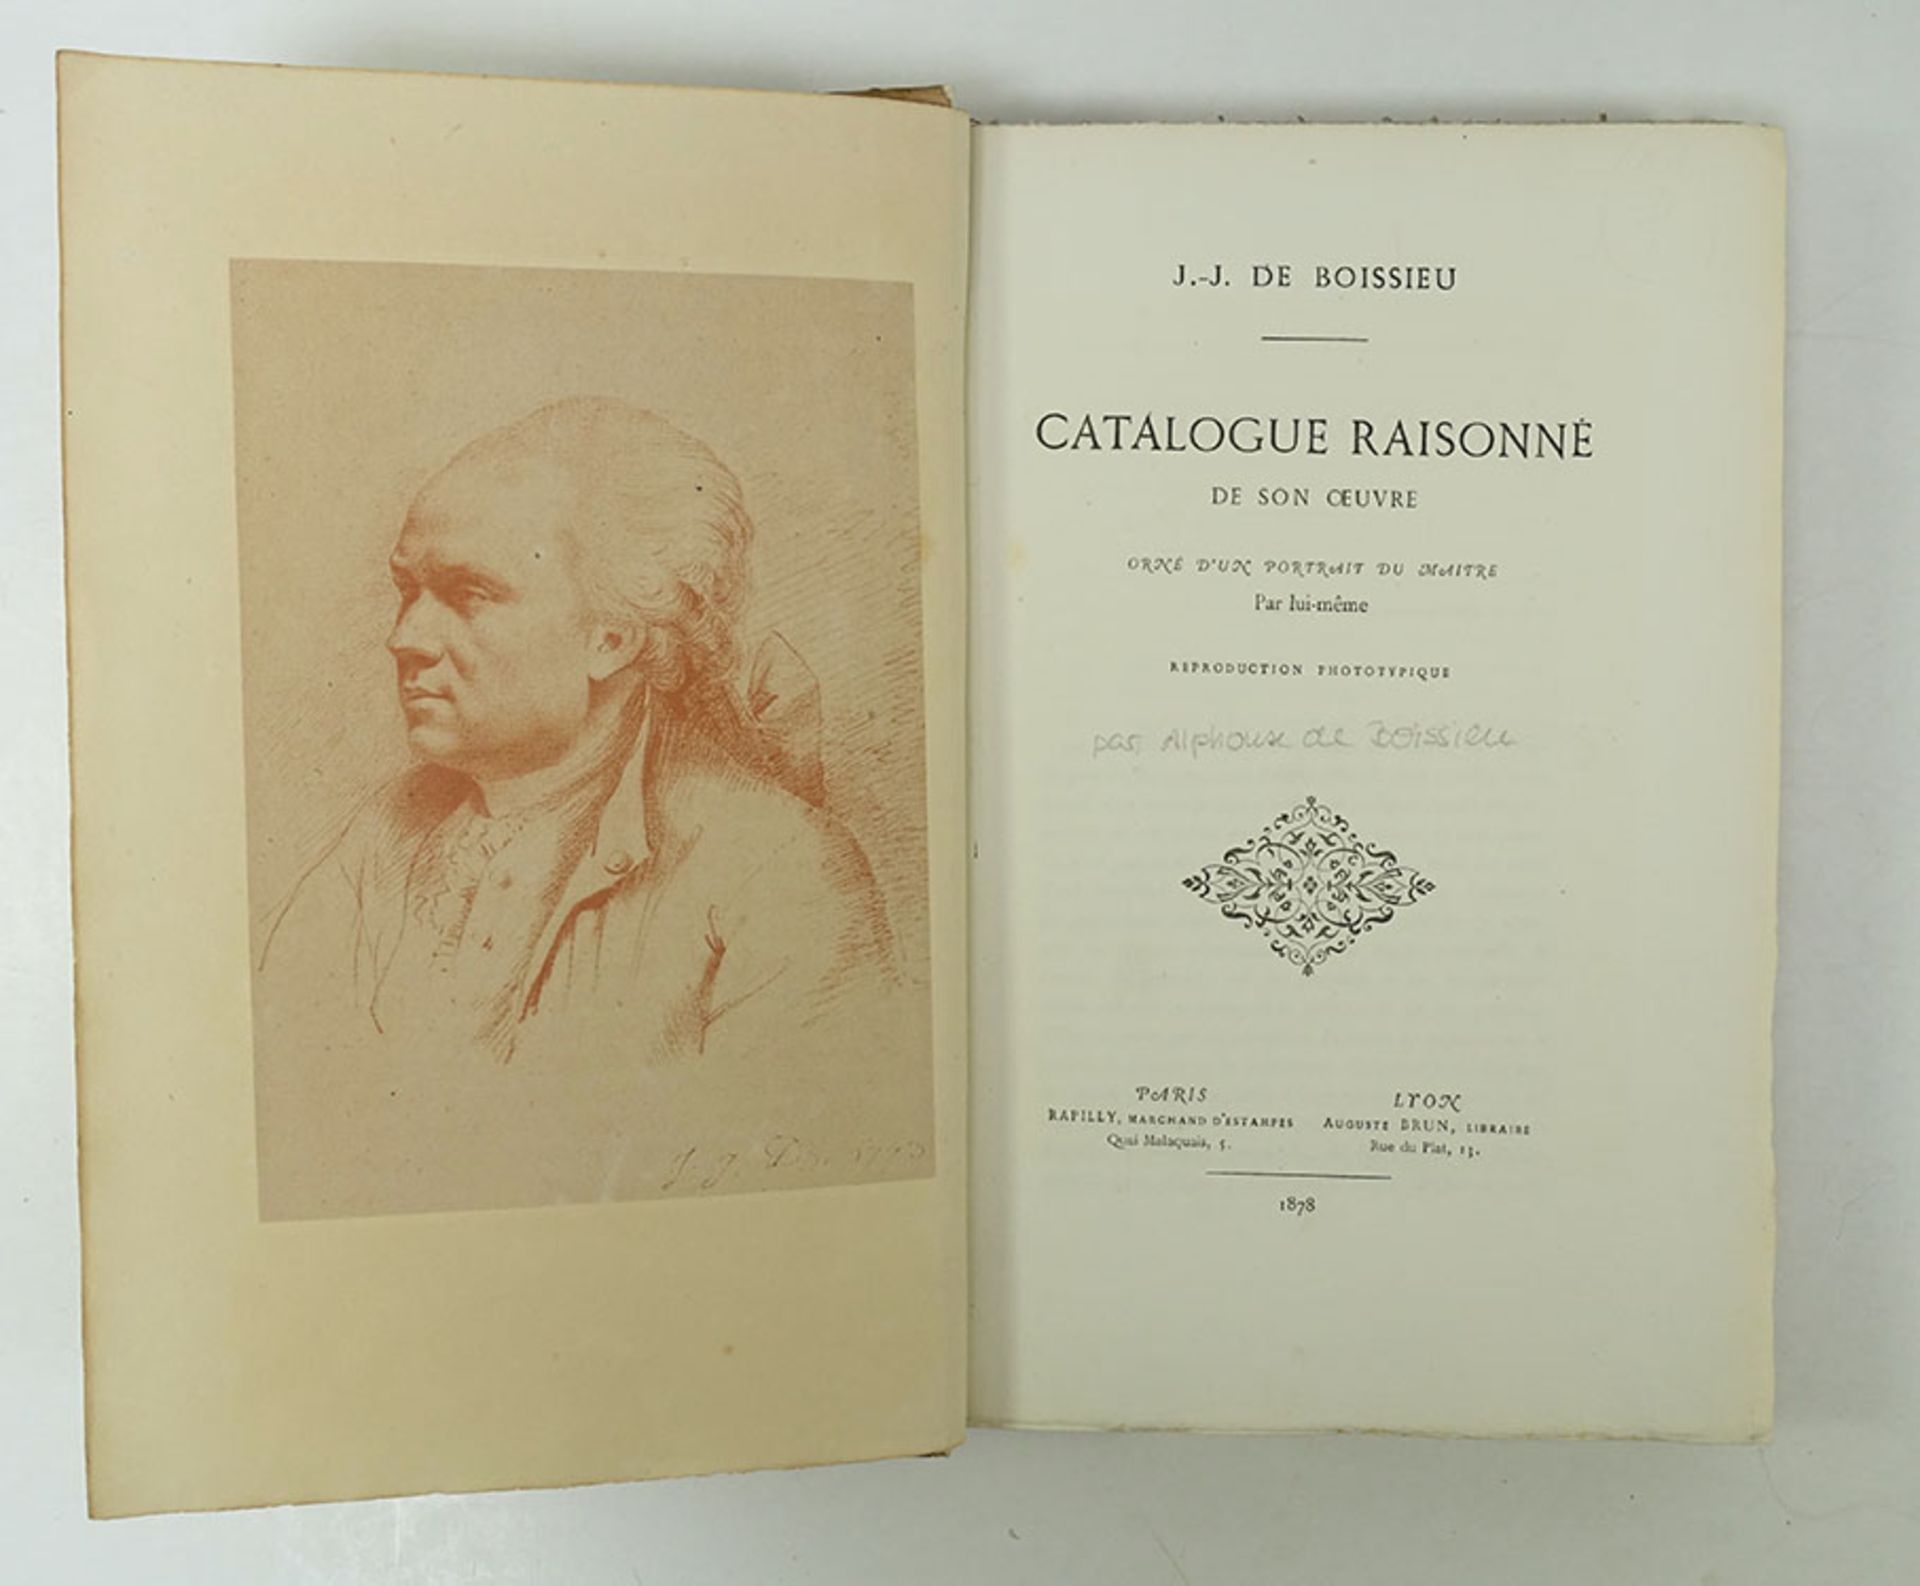 (BOISSIEU, Alph. de). J.-J. de Boissieu: Catalogue raisonné de son uvre. Par./Lyon, 1878. xxiv,